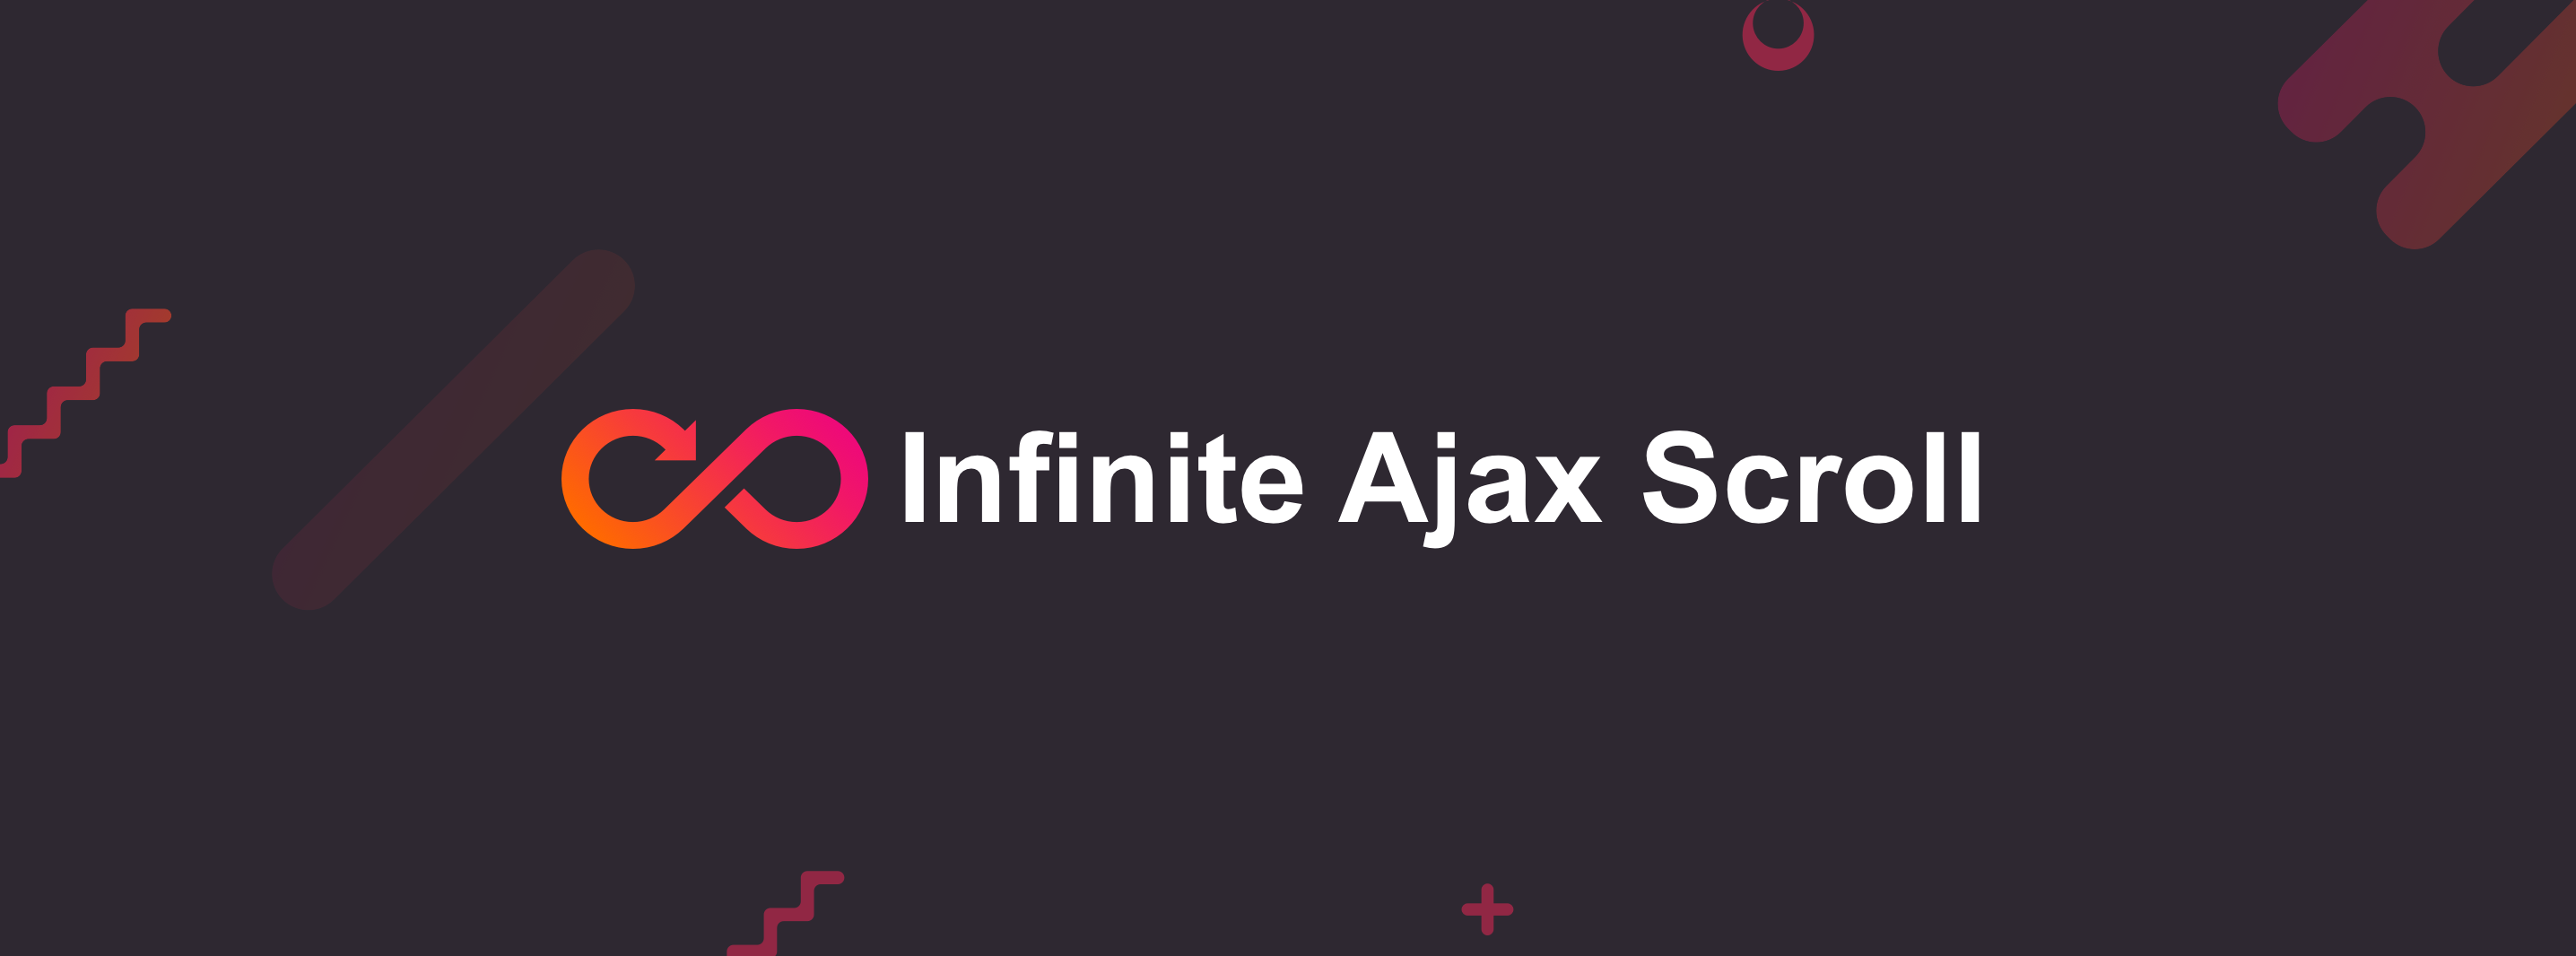 Infinite Ajax Scroll